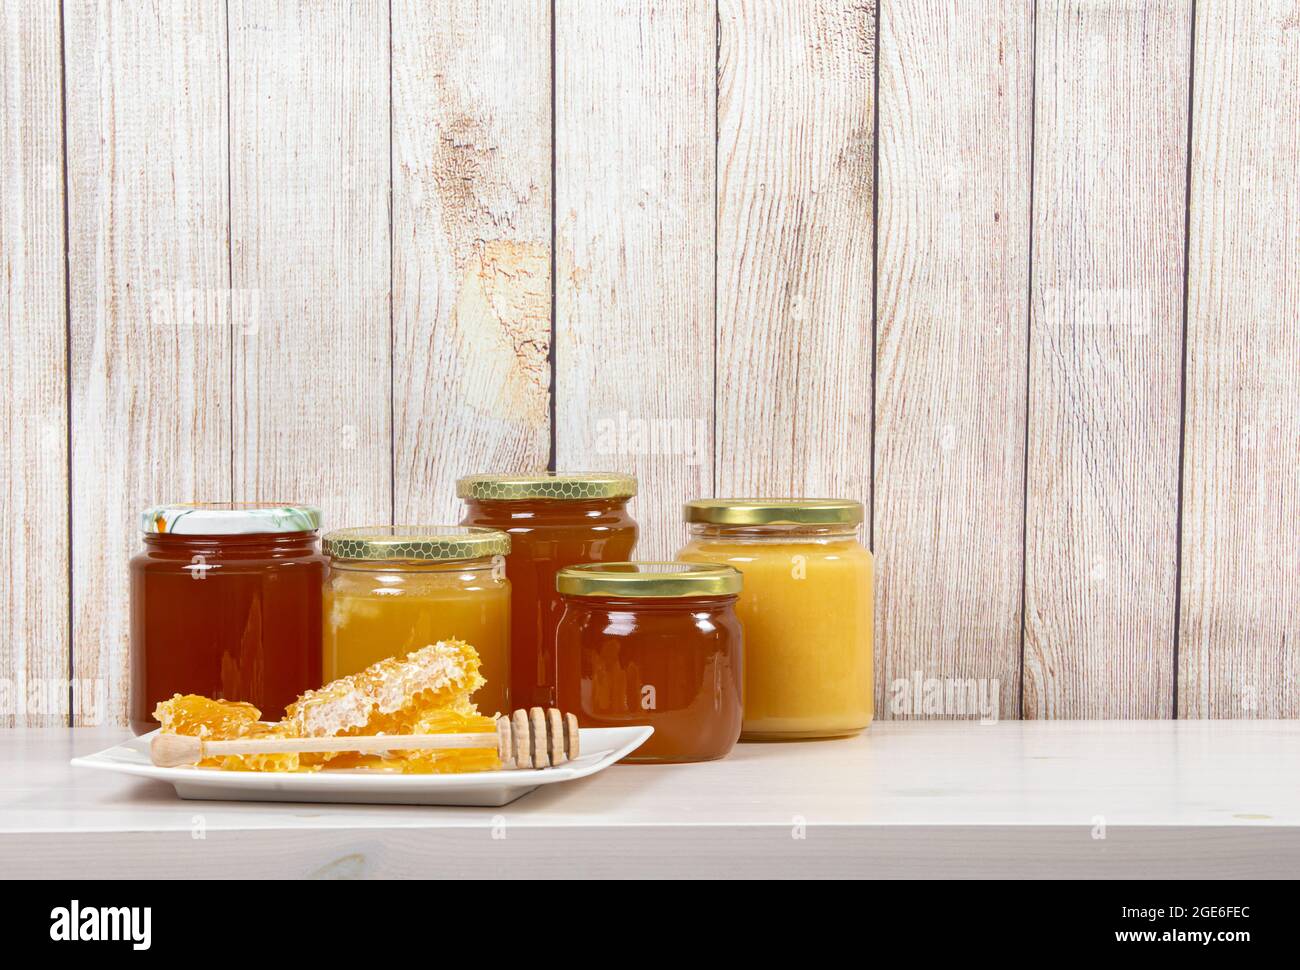 Divers pots de miel avec différentes couleurs miel, beaucoup d'espace de copie sur fond de bois clair. Concept de fond de bordure de miel. Banque D'Images